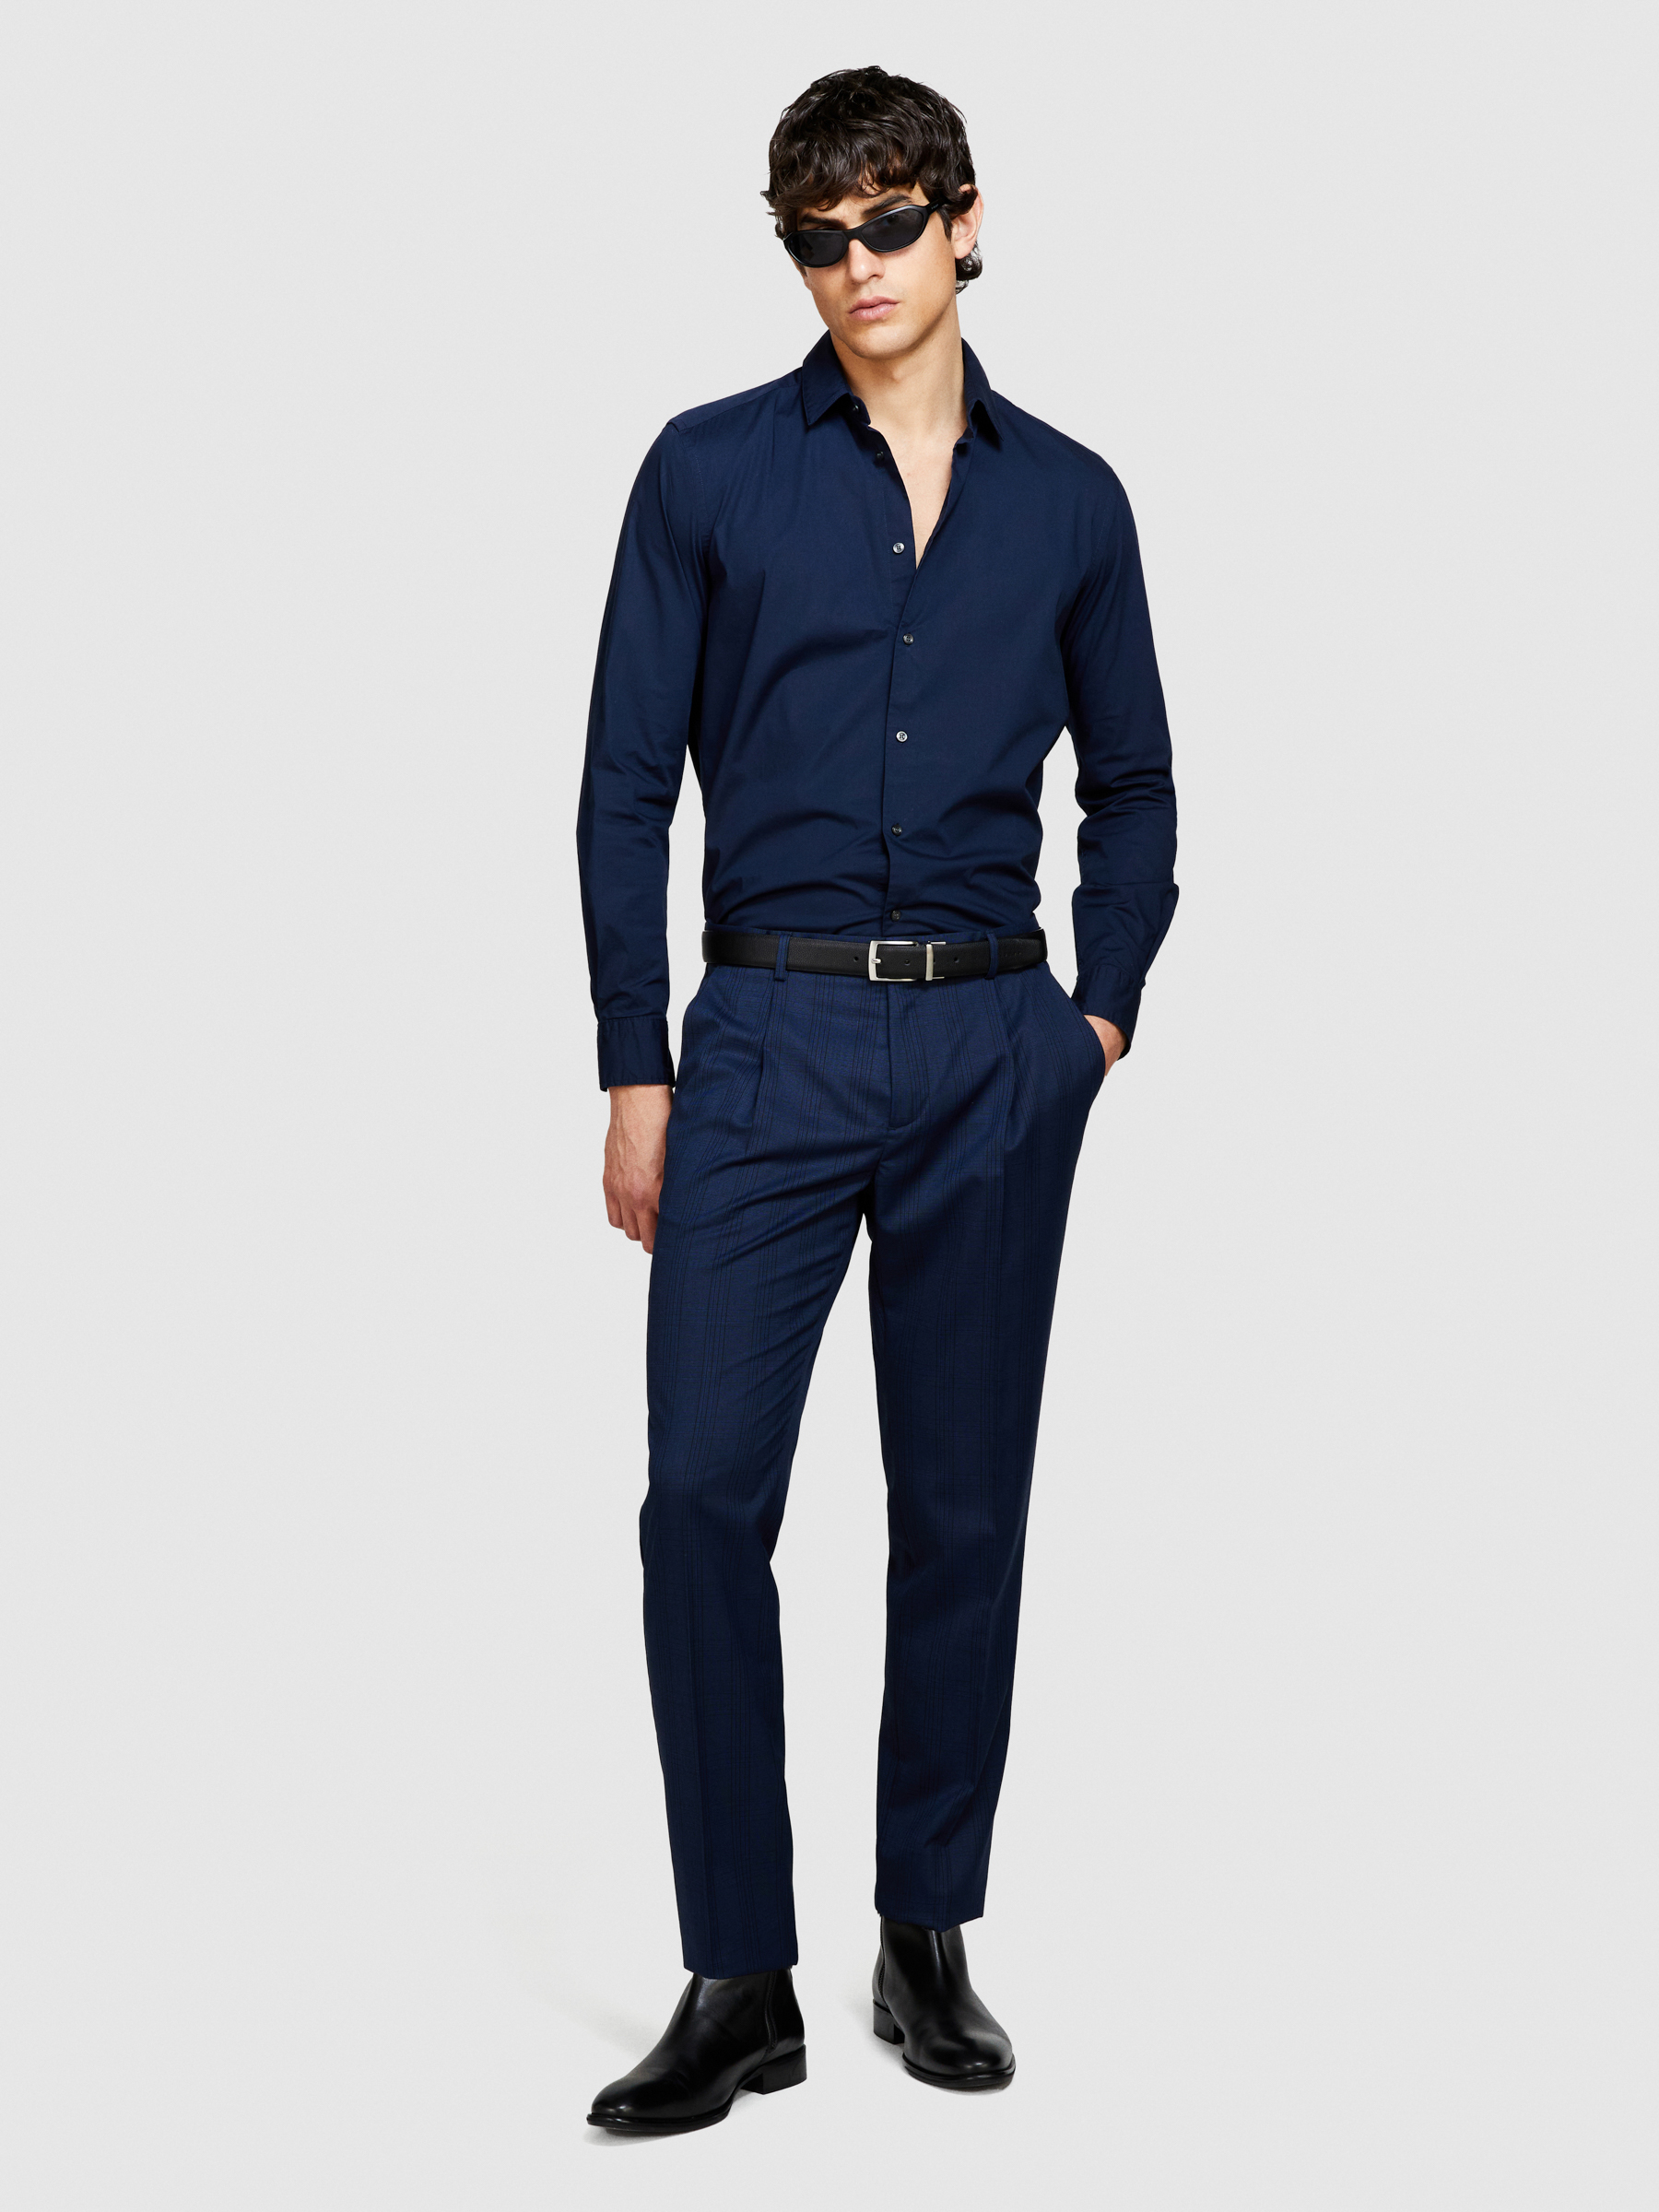 Sisley - Slim Fit Shirt, Man, Dark Blue, Size: 44